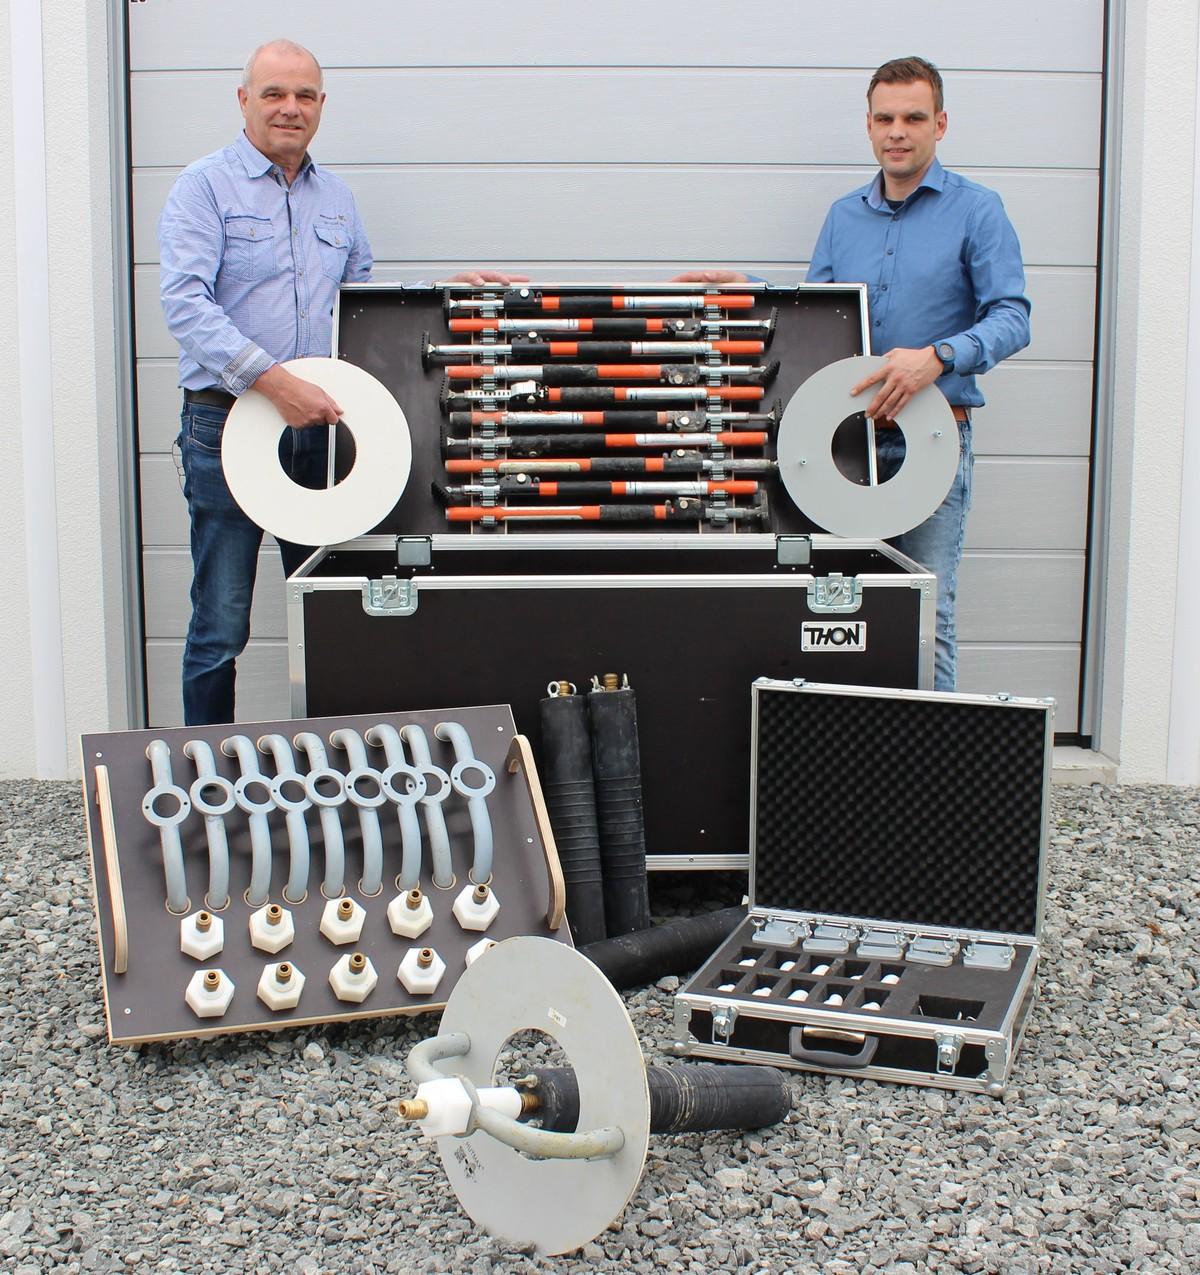 Erfinder des Hutmax-Systems: Rainer und Daniel Schuster | Foto: Kanaltechnik Schuster